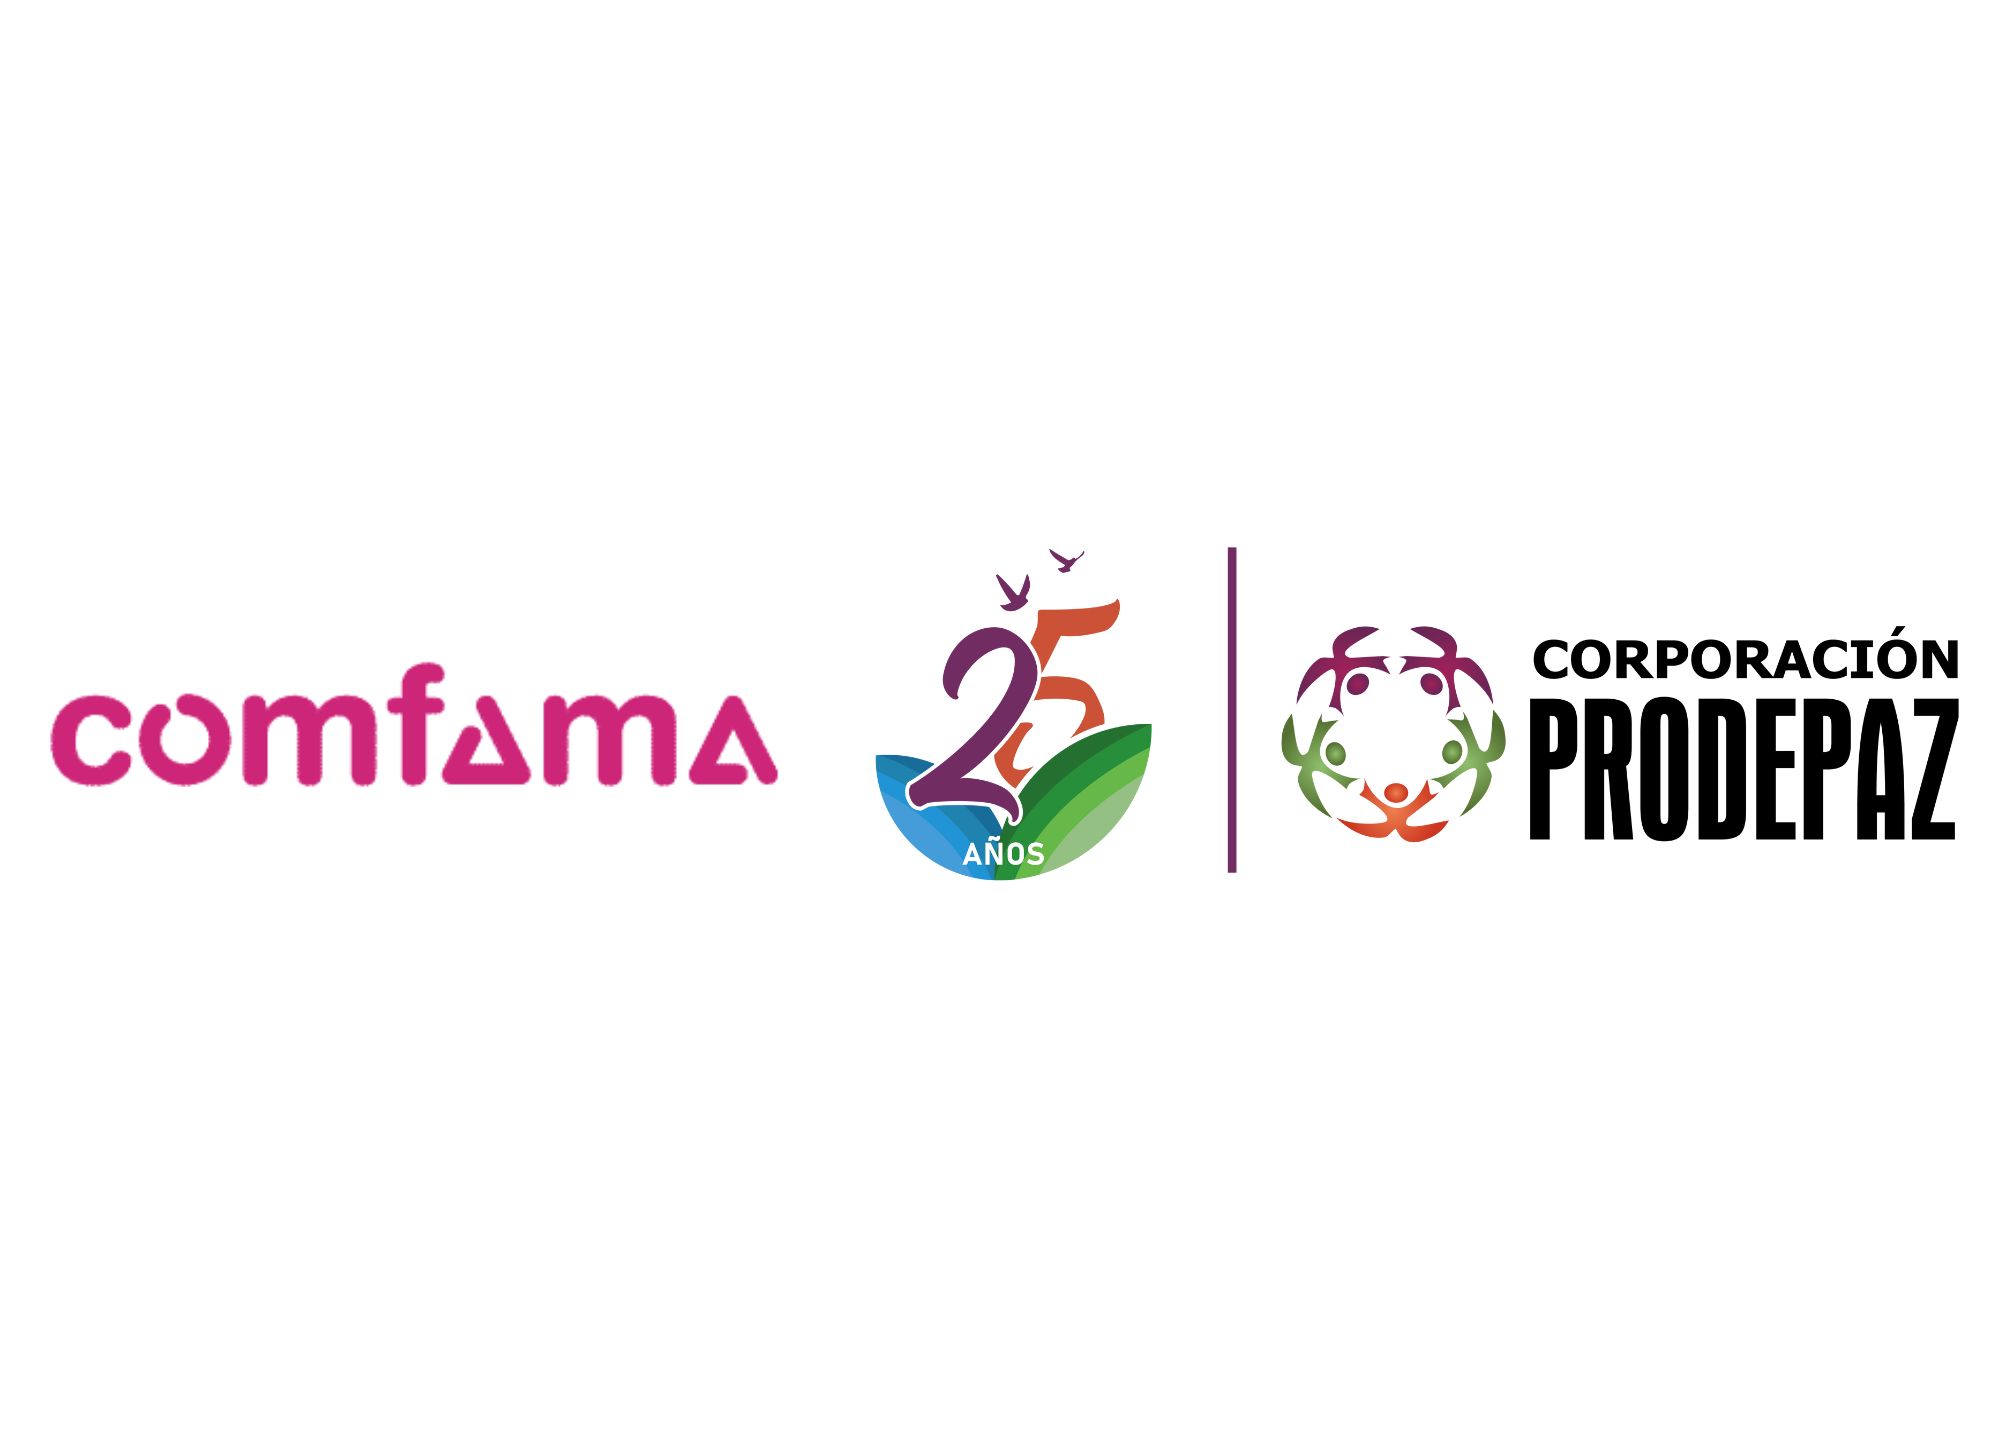 Realizamos socialización y diagnóstico de modelos de negocio de mujeres emprendedoras del convenio firmado entre la Corporación Prodepaz y el proyecto Germina con COMFAMA